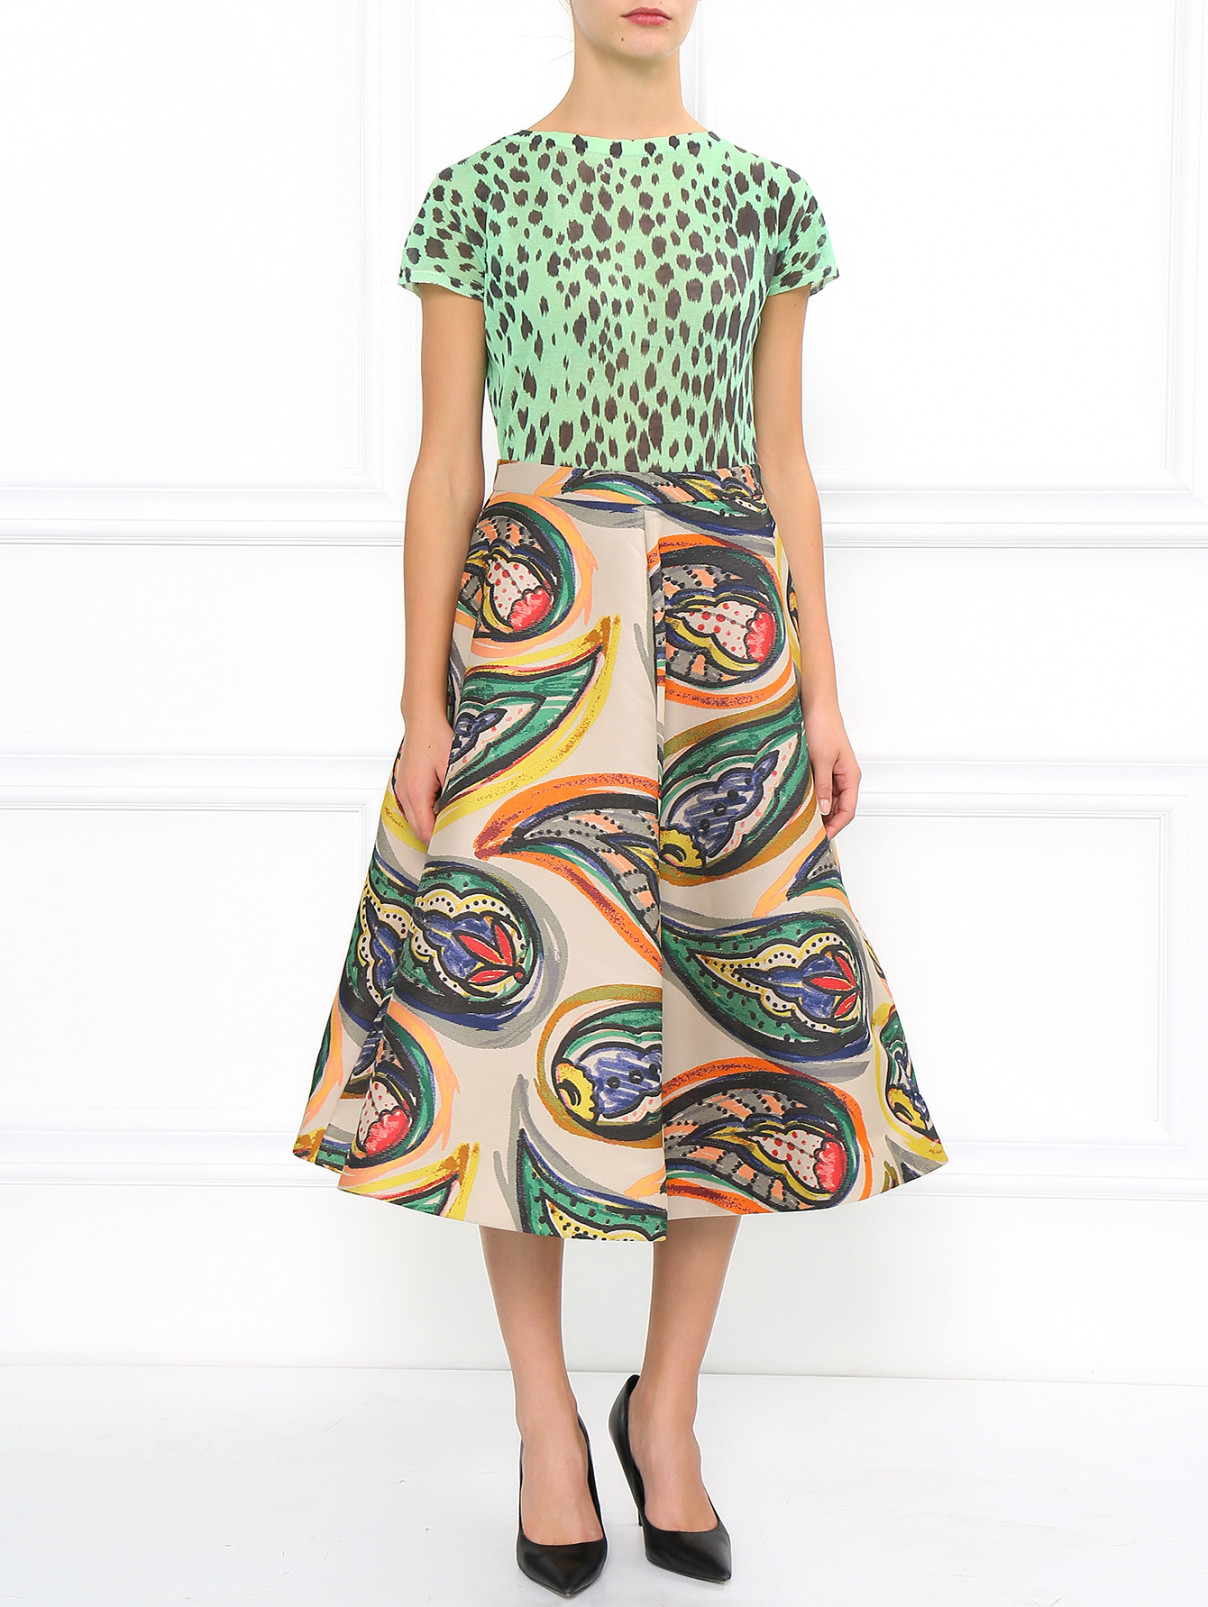 Жаккардовая юбка с абстрактным принтом Vika Gazinskaya  –  Модель Общий вид  – Цвет:  Бежевый